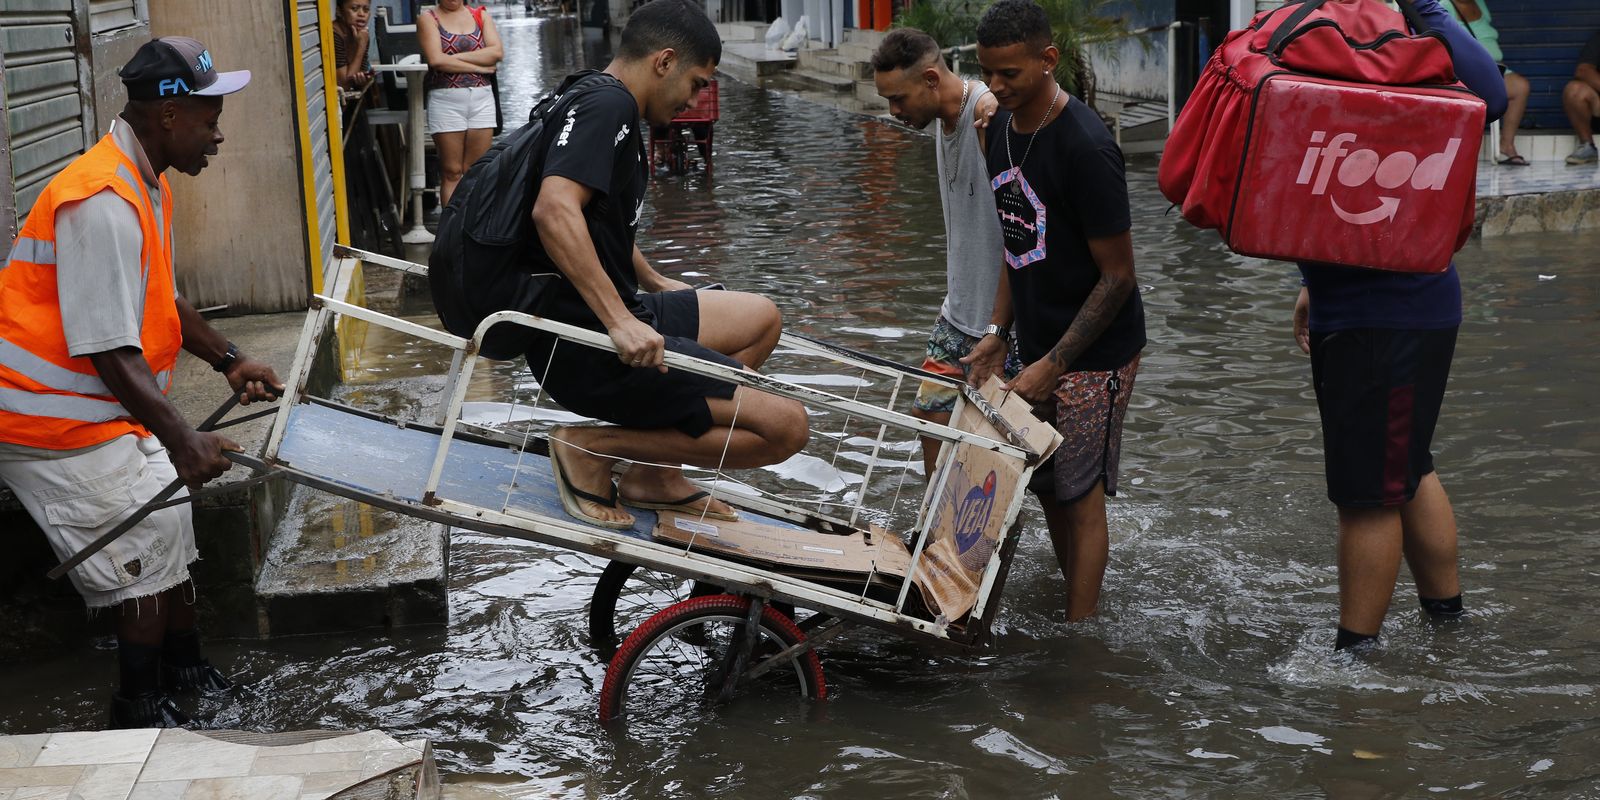 Moradores e comerciantes da comunidade de Rio das Pedras, zona oeste da cidade, sofrem com alagamentos devido às chuvas intensas que causaram estragos em vários pontos do Estado do Rio de Janeiro.